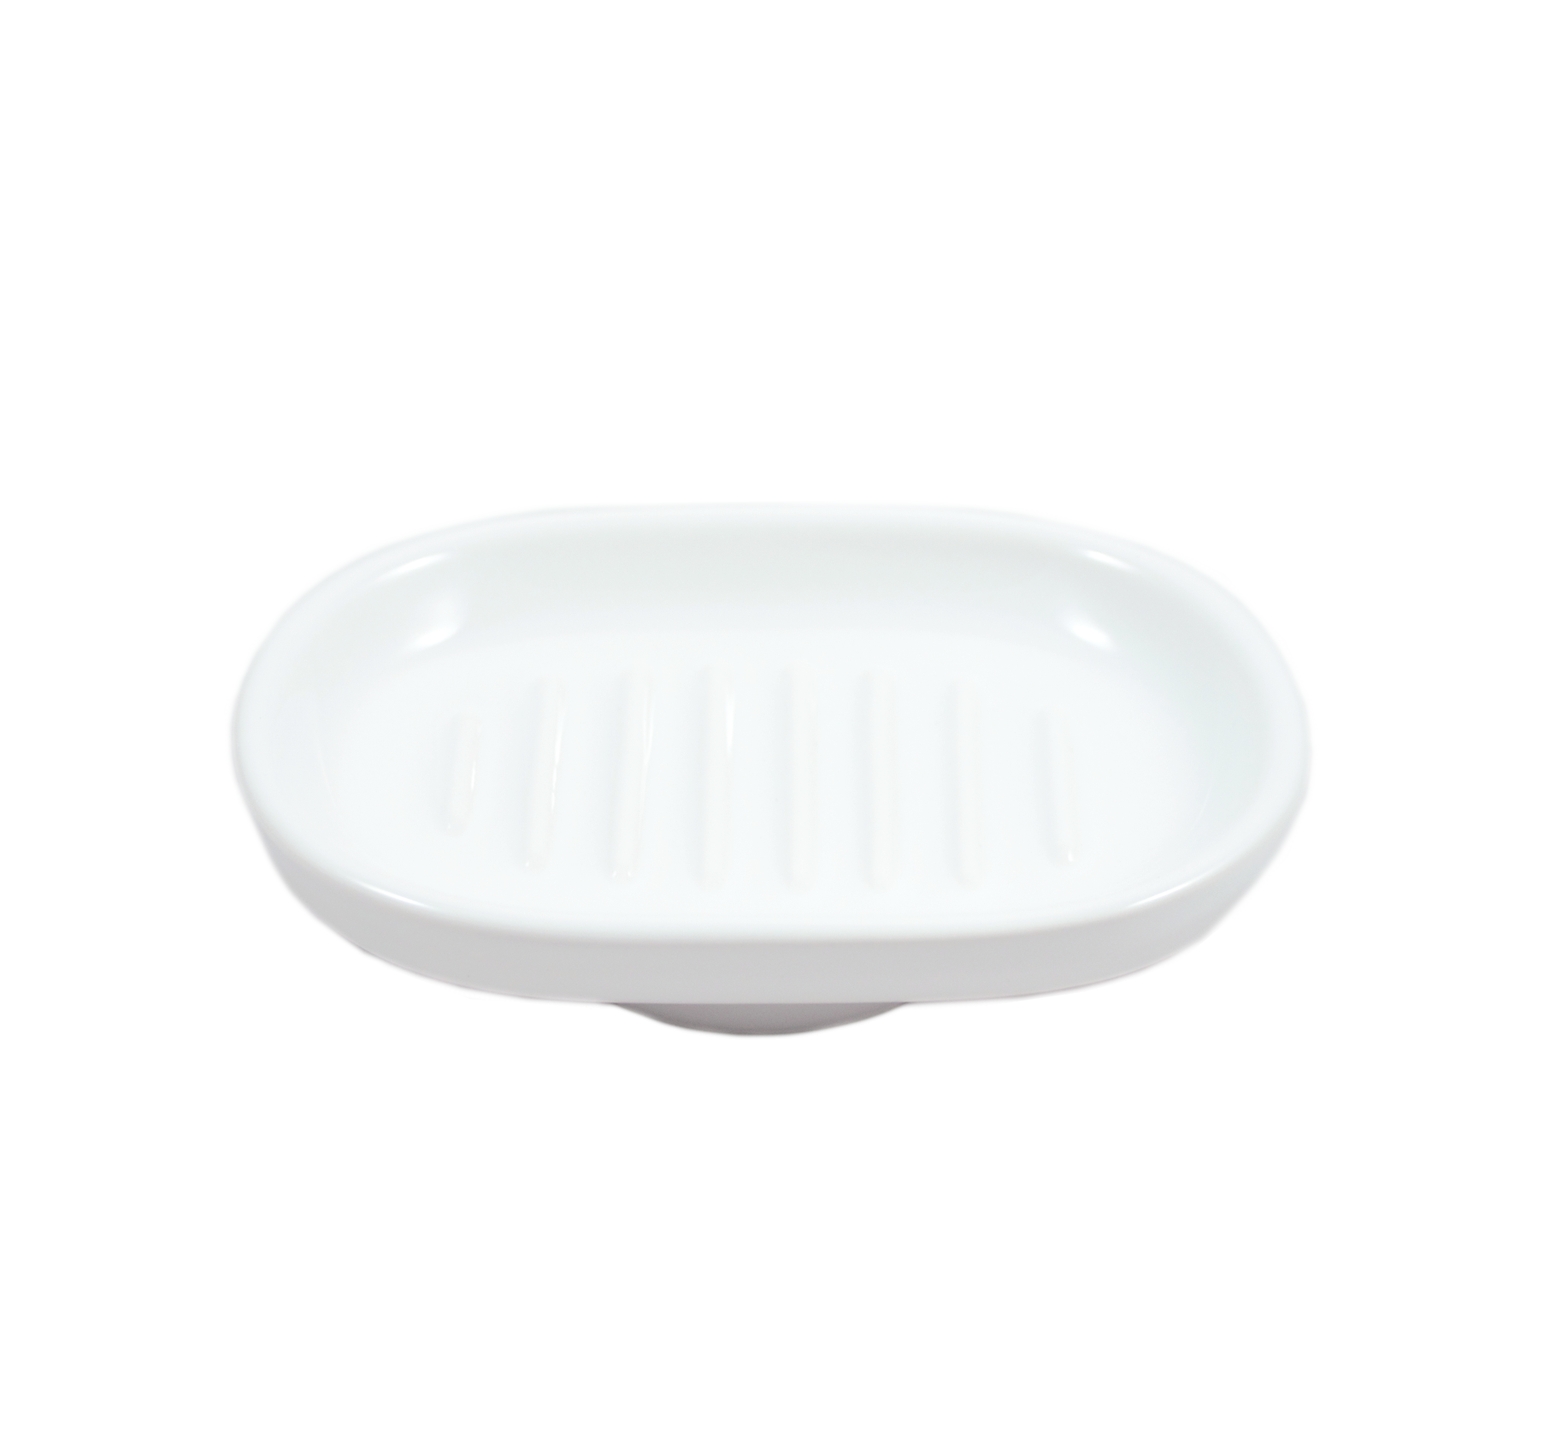 Porta sapone ovale in ceramica ricambio per accessori - diametro attacco 6,15 cm